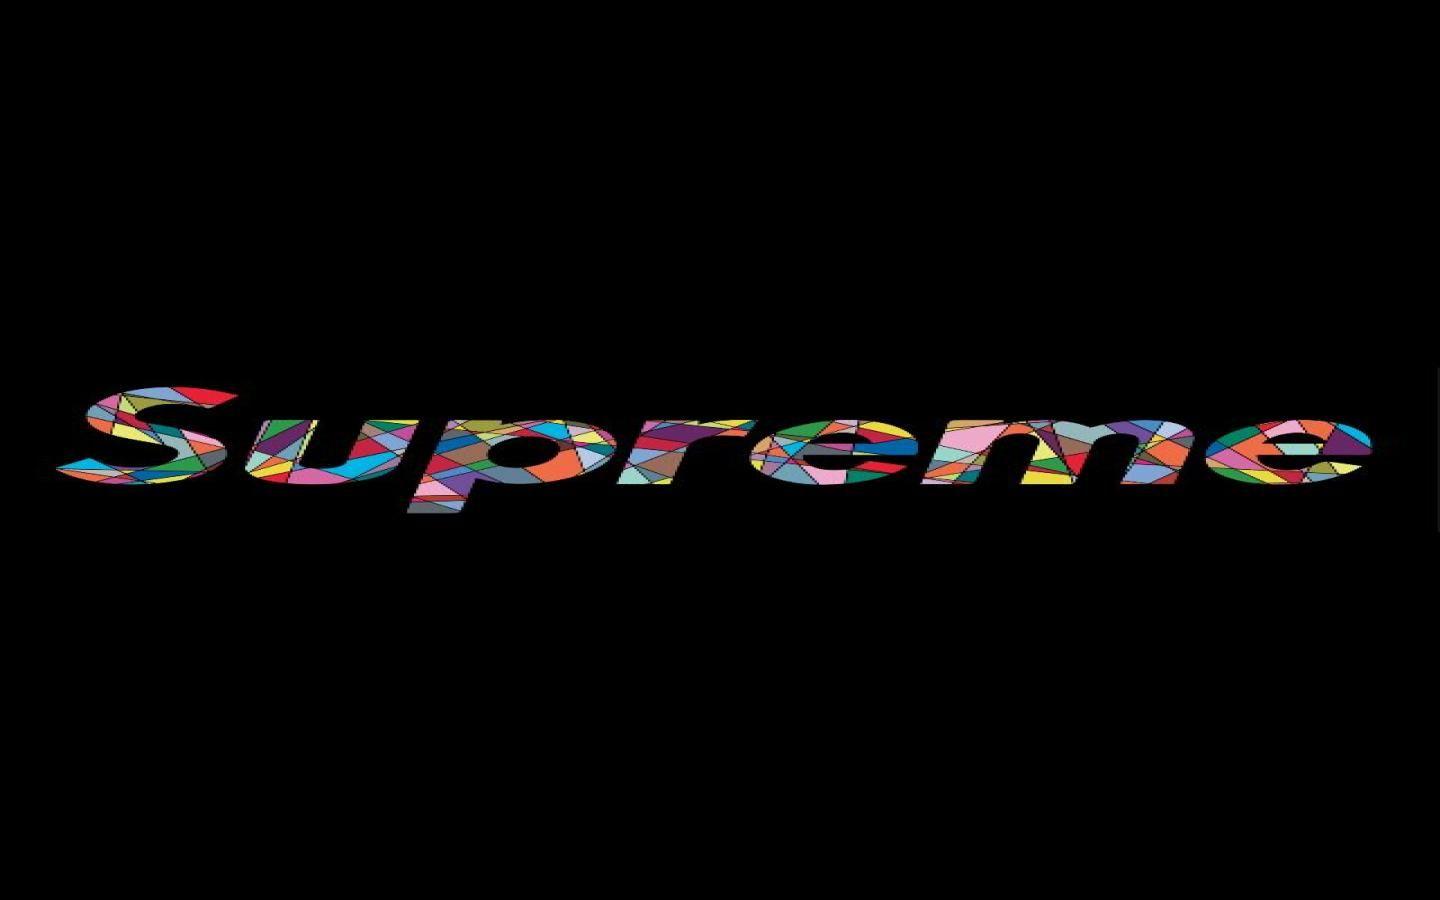 Supreme Logo Wallpaper (640x1136 px, 24.22 Kb)